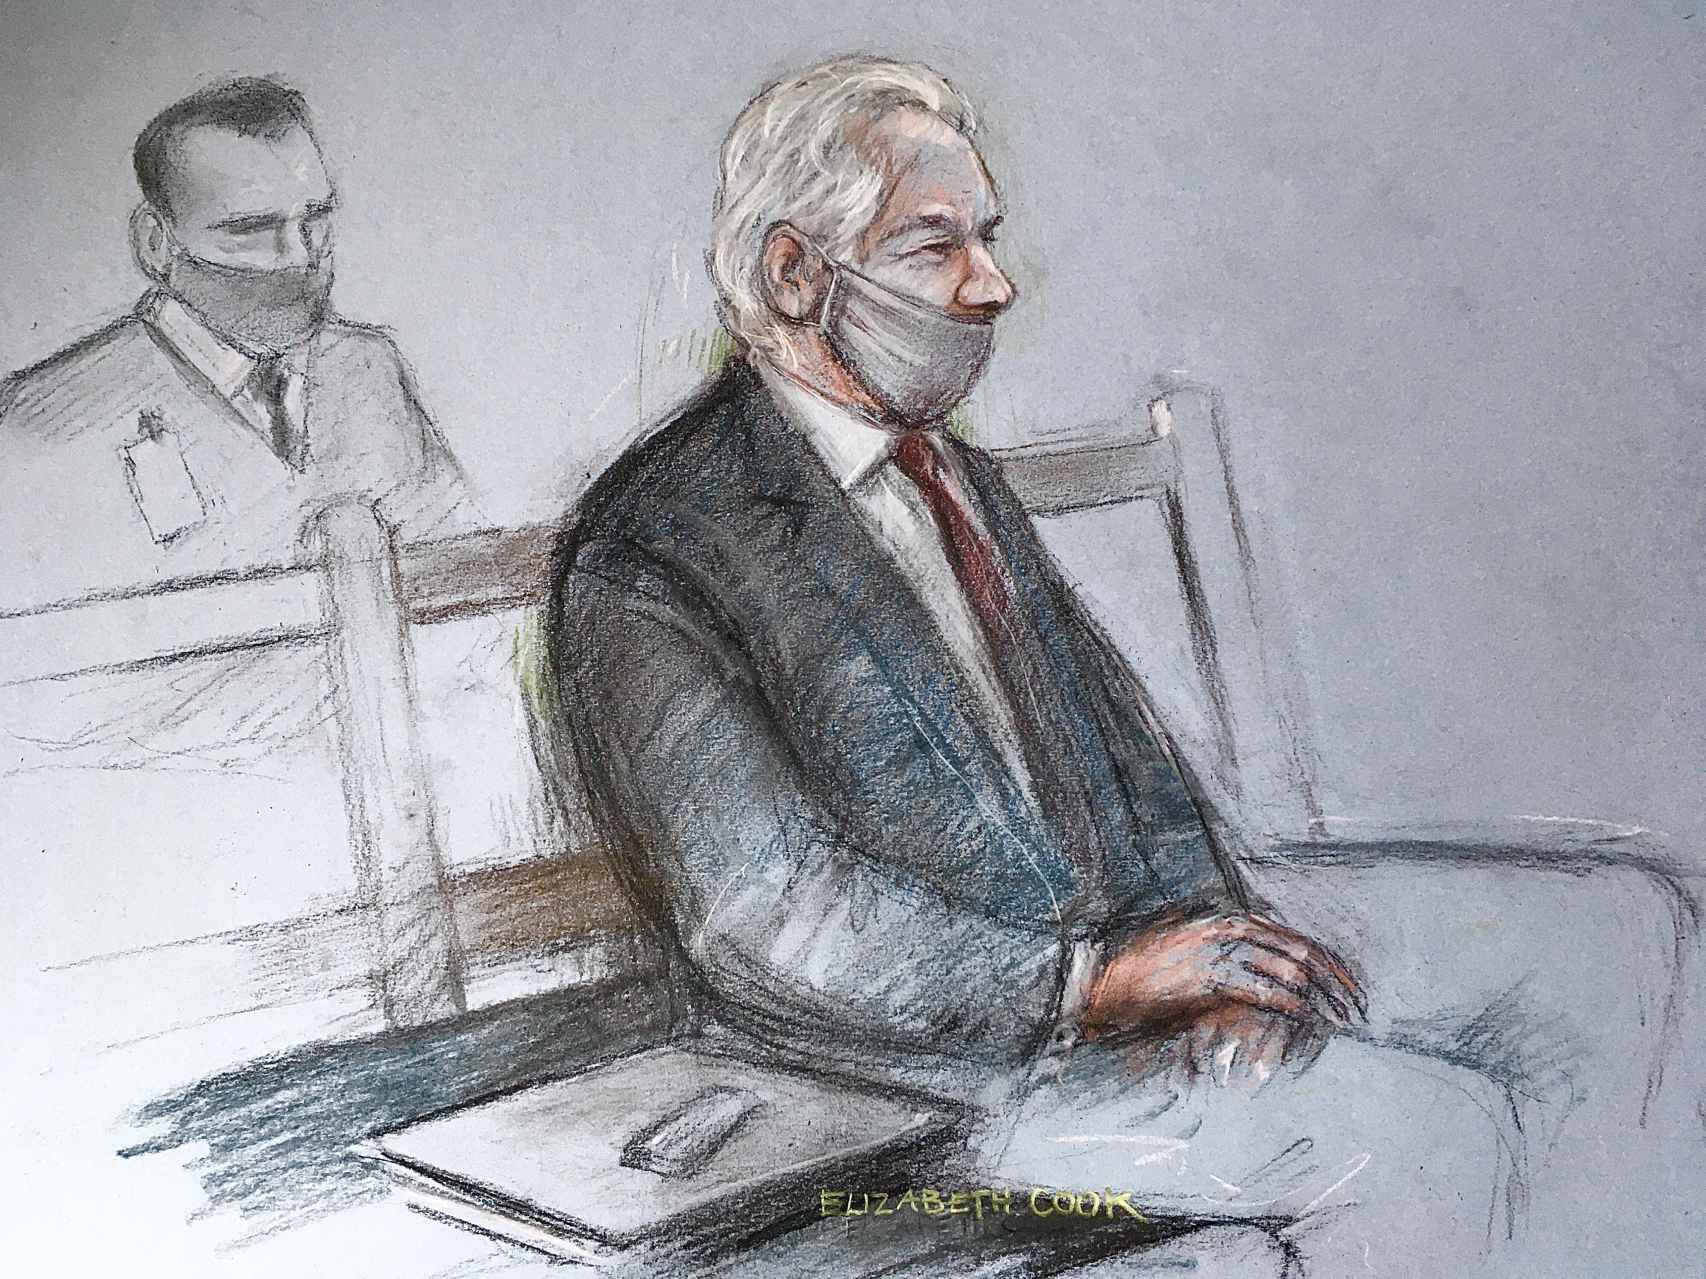 Boceto de la artista Elizabeth Cook que muestra al fundador de Wikileaks, Julian Assange, asistiendo a su juicio de extradición en el Tribunal Penal Central en enero de 2021.